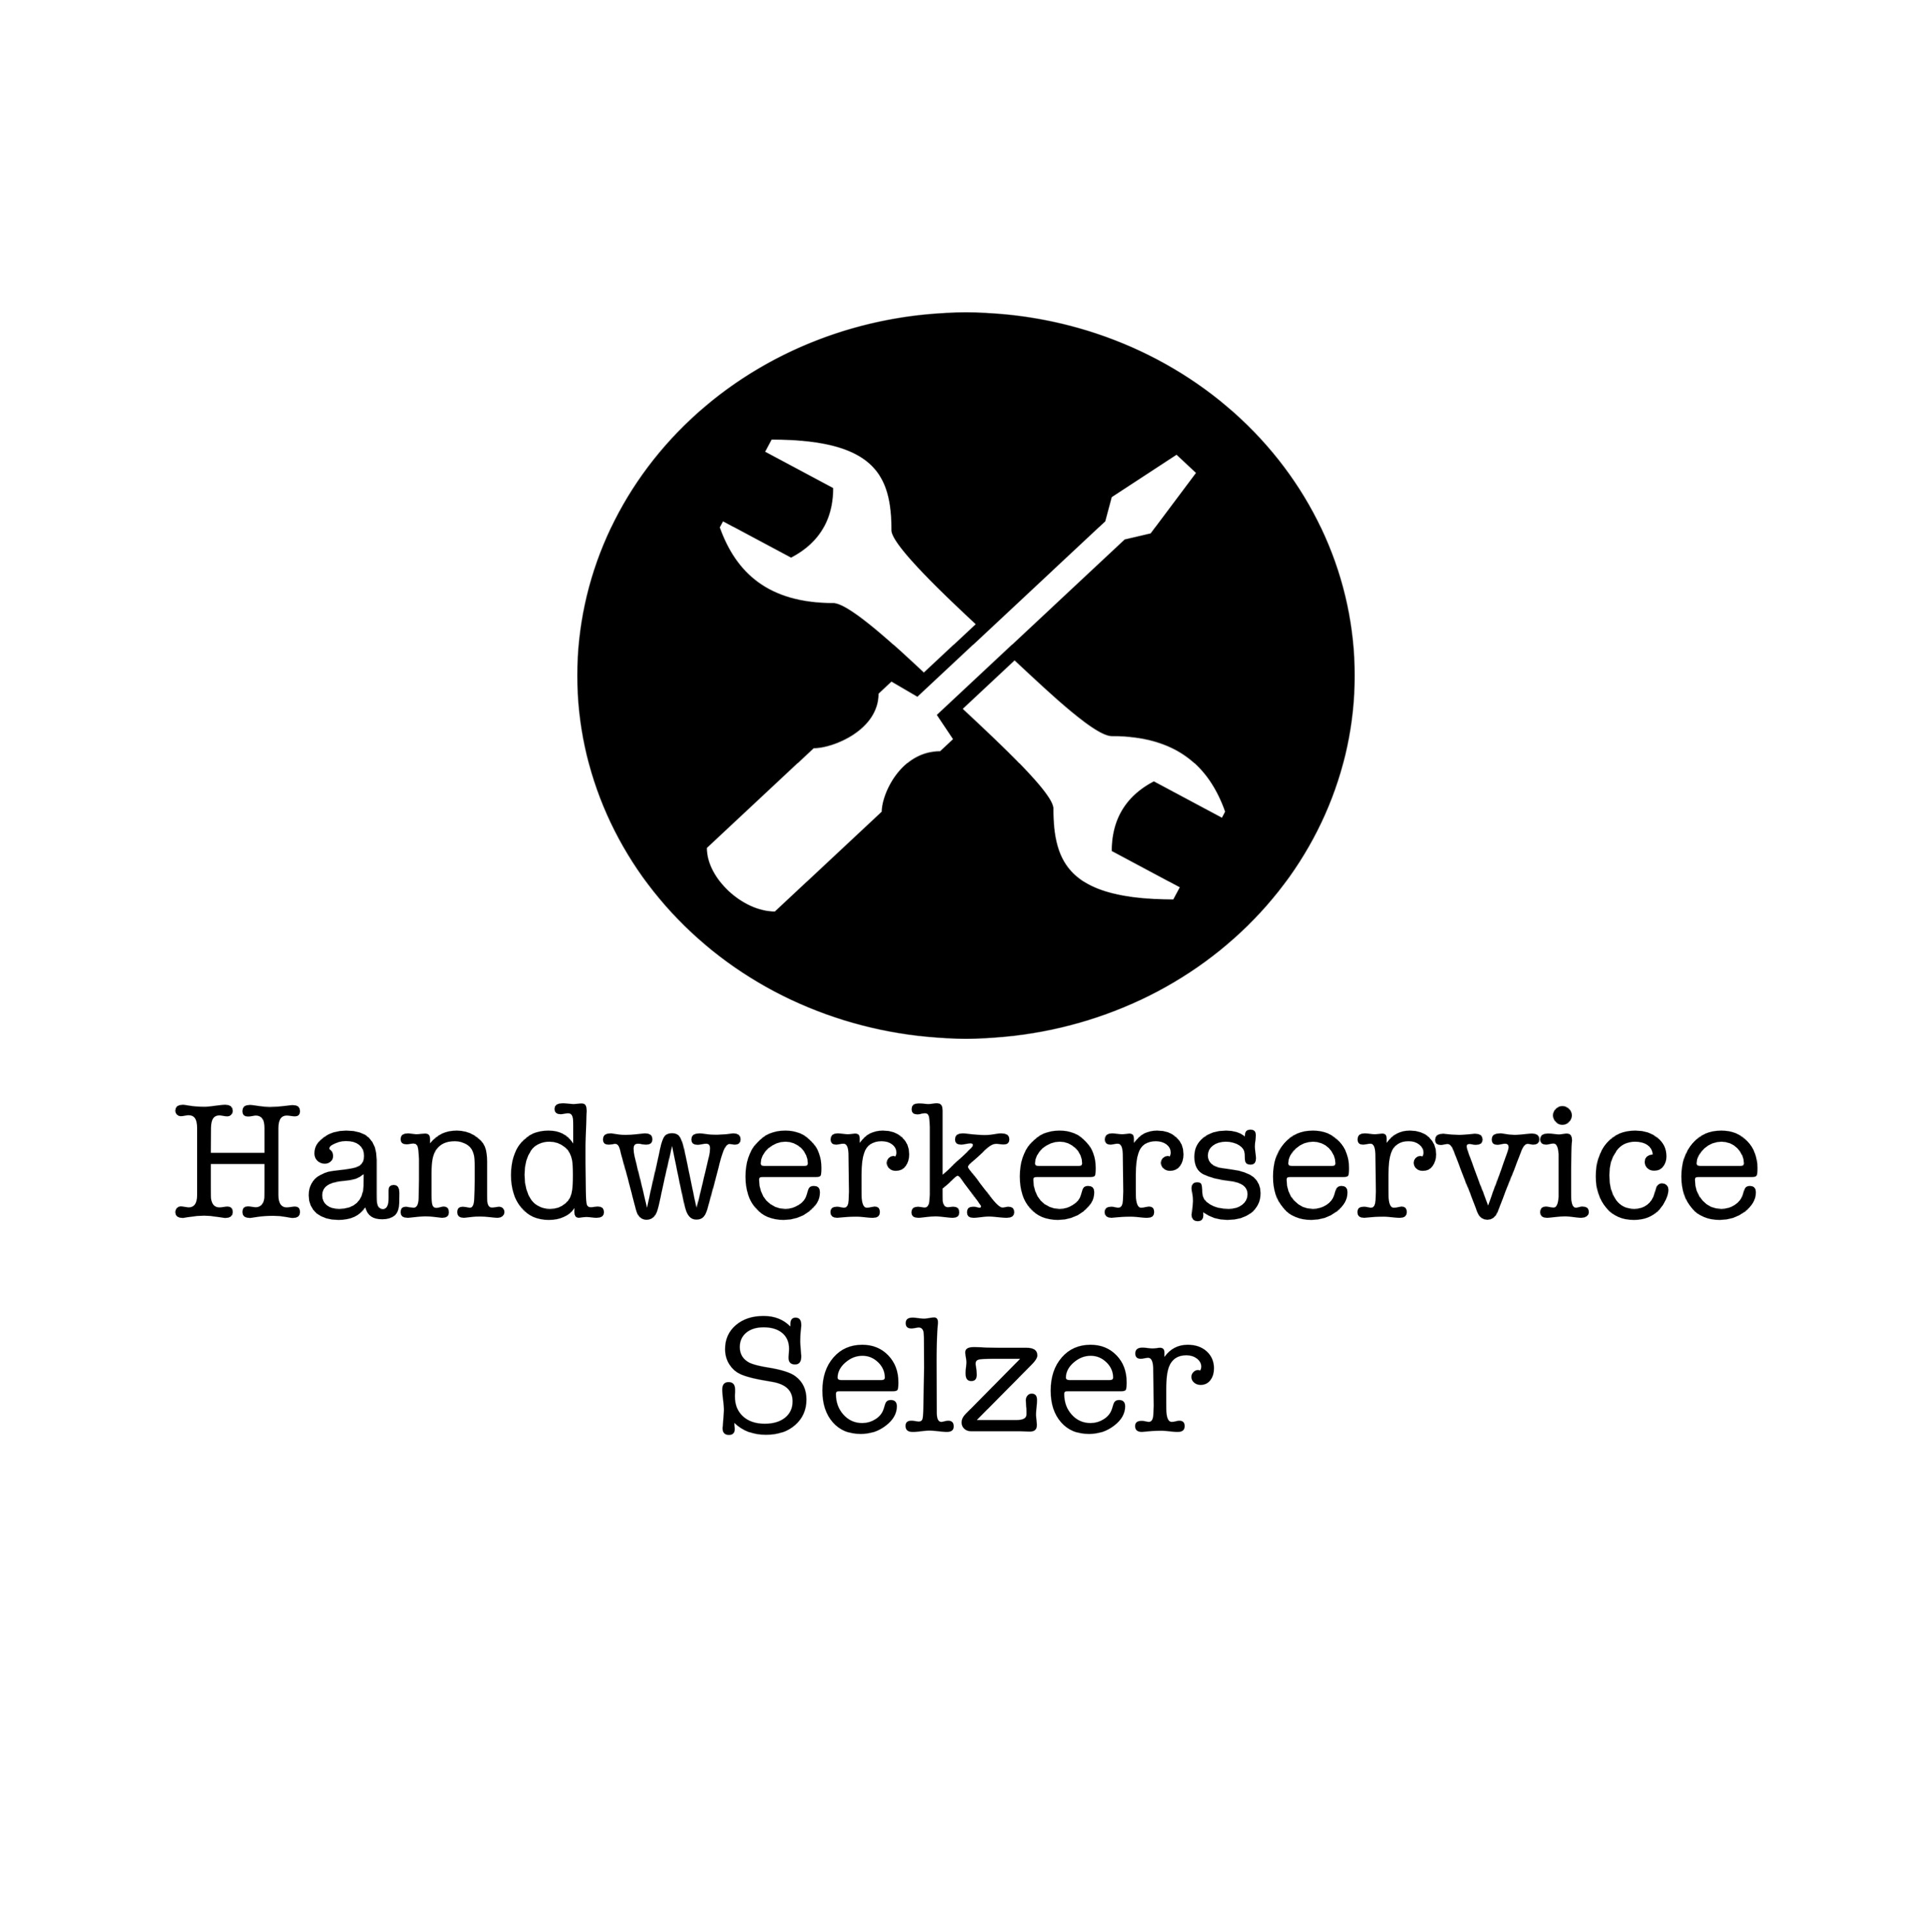 Handwerkerservice Selzer in Bergisch Gladbach - Logo